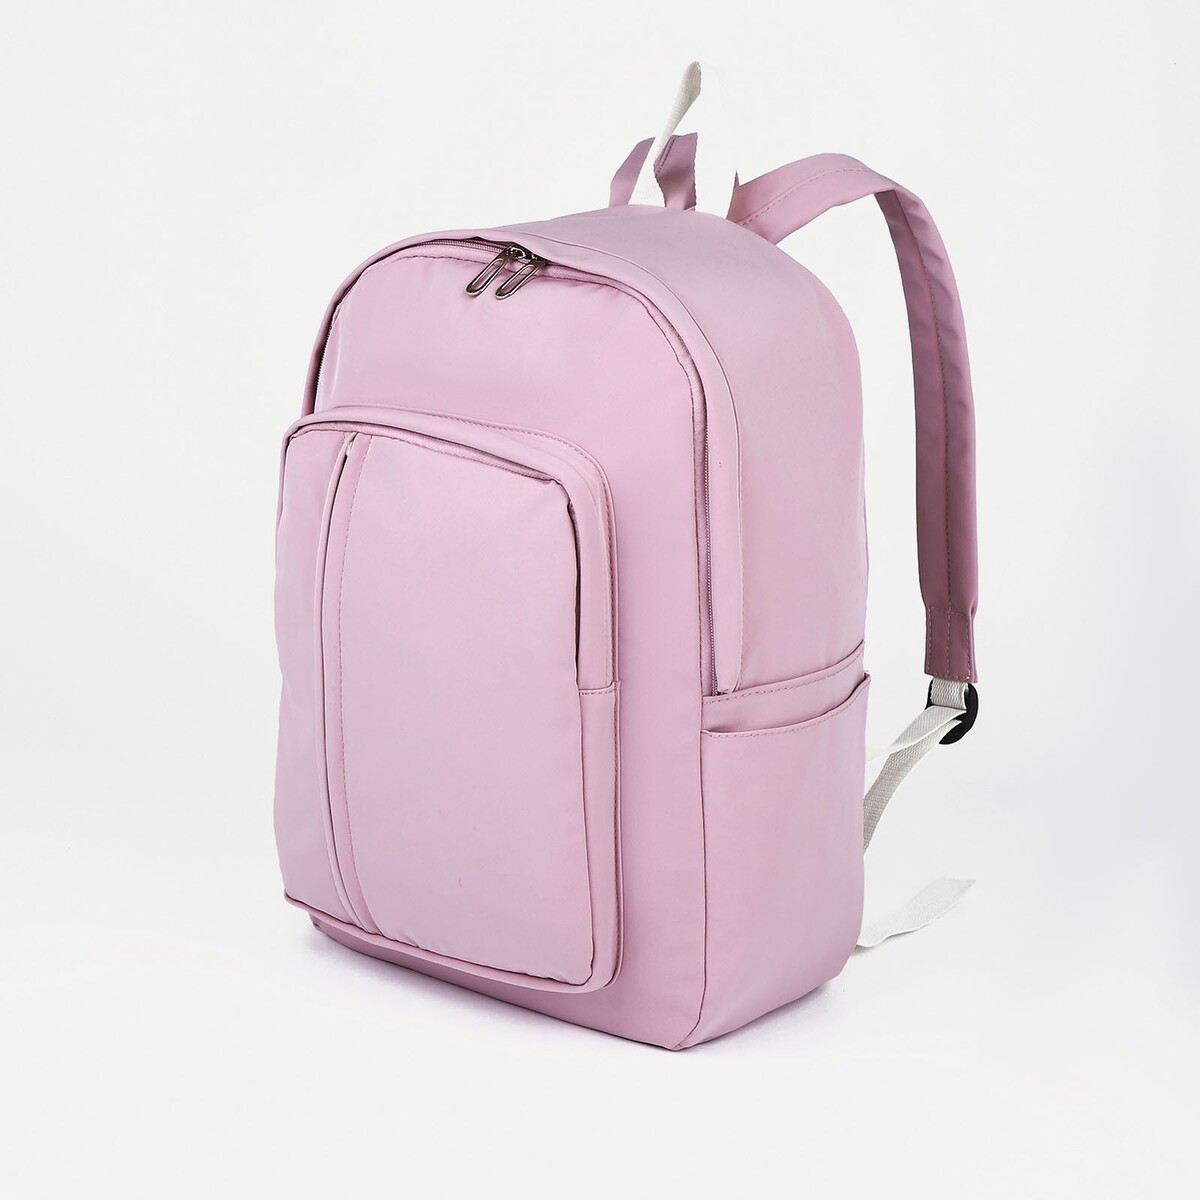 Рюкзак молодежный из текстиля на молнии, 5 карманов, цвет розовый рюкзак школьный из текстиля 5 карманов розовый